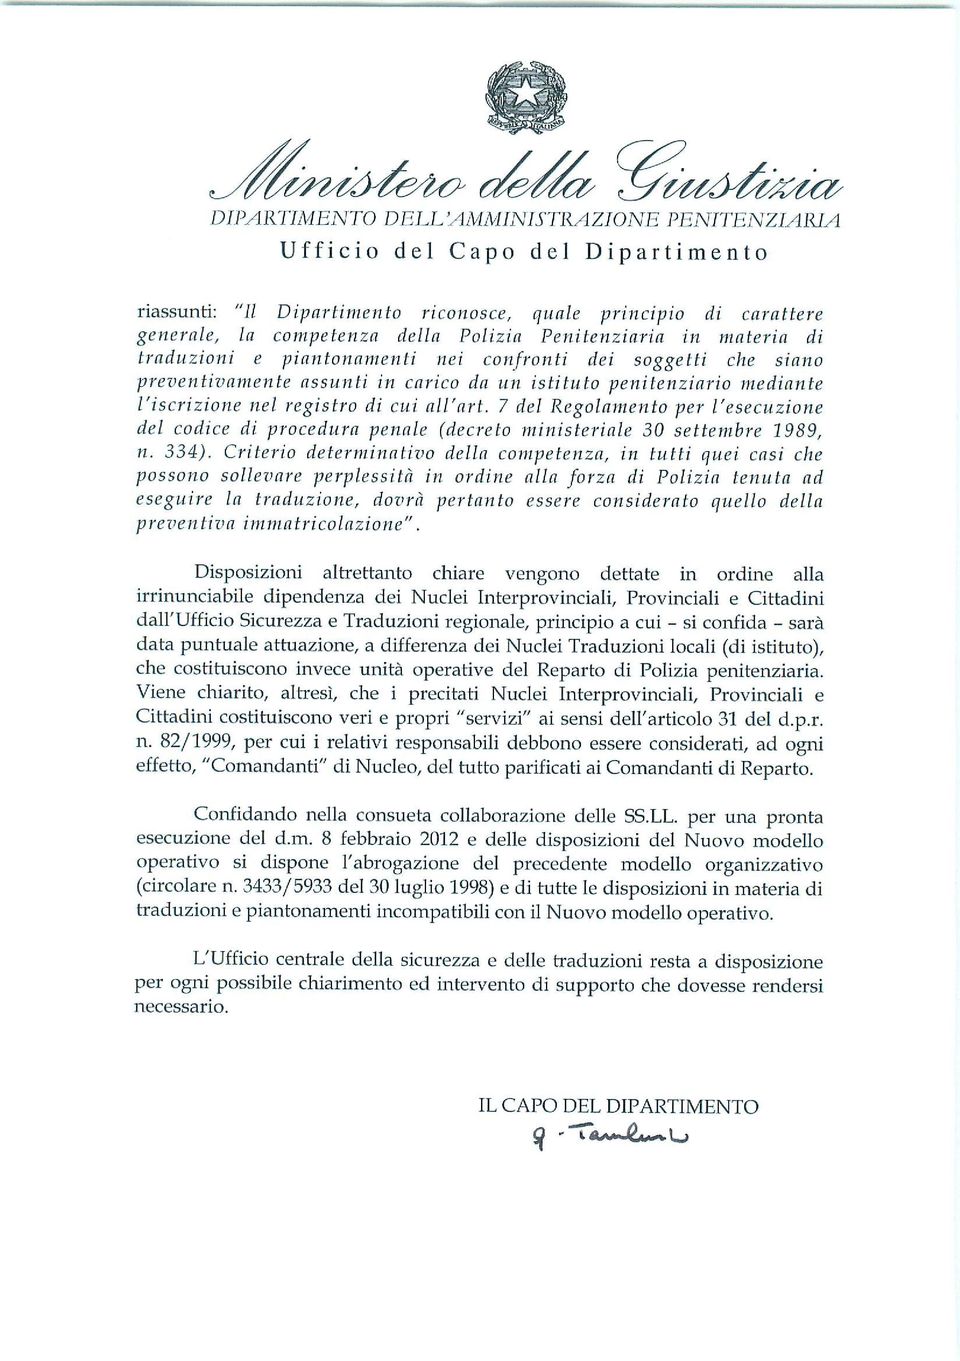 all'ari, 7 del Regolamento per l'esecuzione del codice di procedura penale (decreto ministeriale 30 settembre 1989, n. 334).